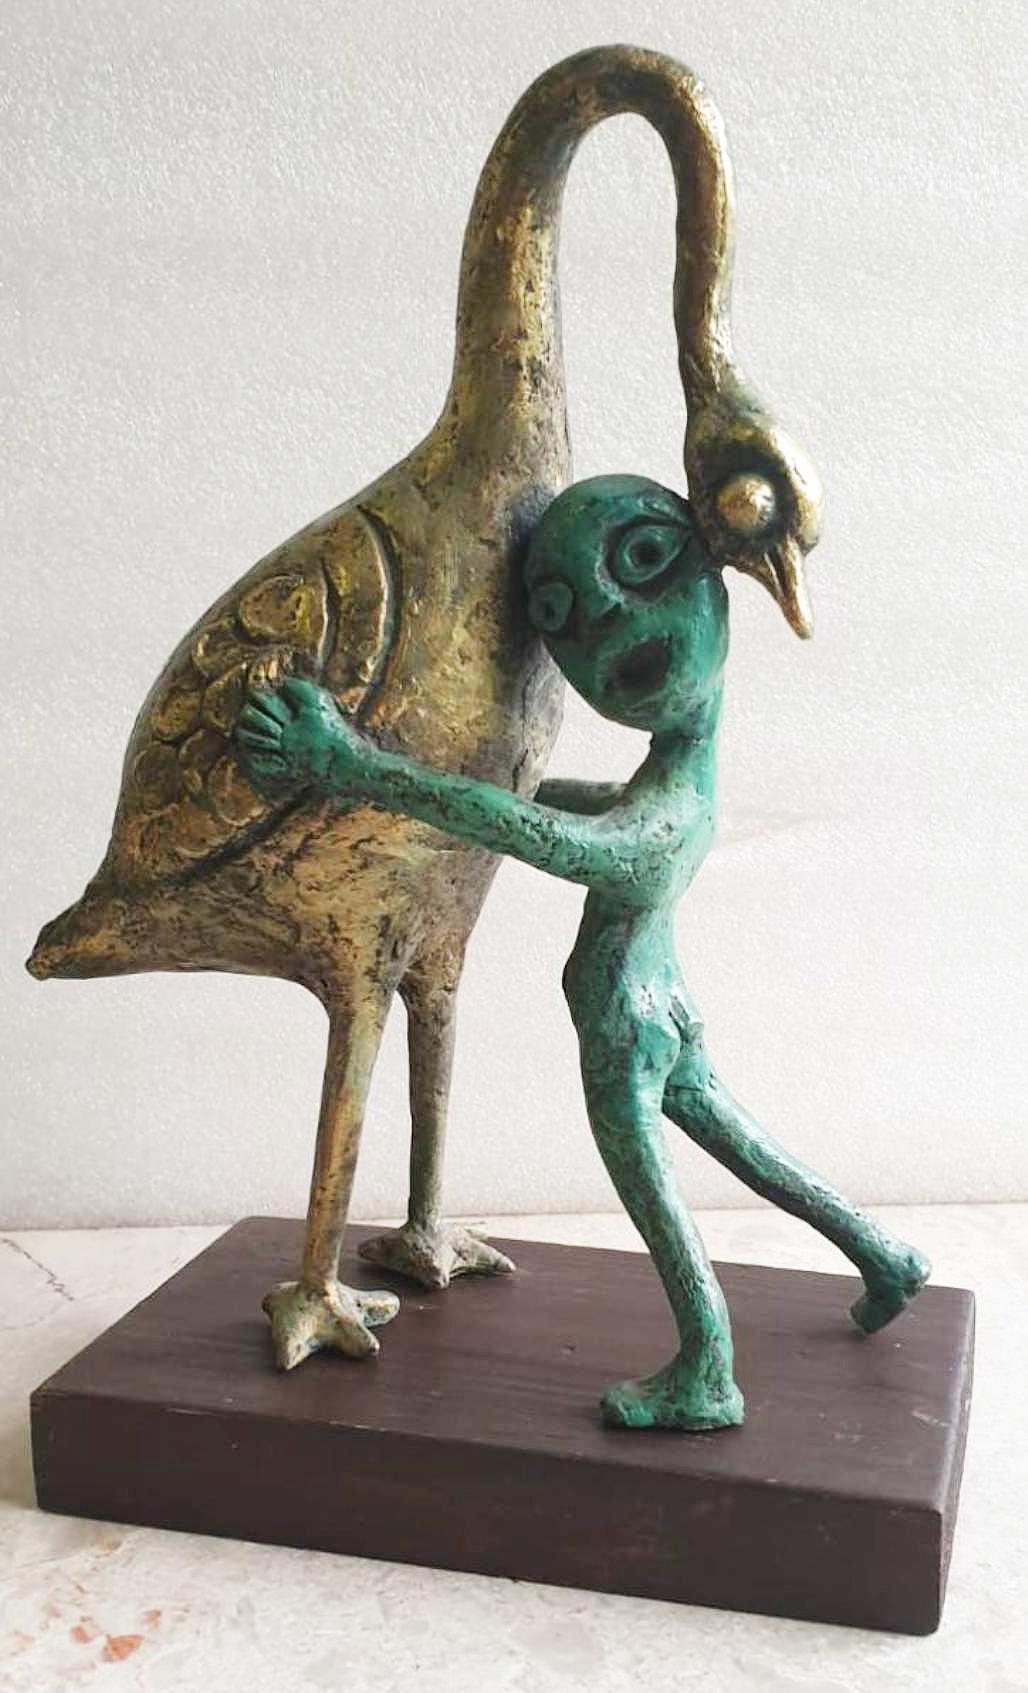 Subrata Biswas - Vie innocente
Bronze, H 9.5 x L 7 x P 3 pouces

Style : Le motif de l'enfant dans sa forme la plus élémentaire apparaît assez souvent dans les œuvres de Subrata Biswas. La forme humaine élémentaire représentant l'enfant complète